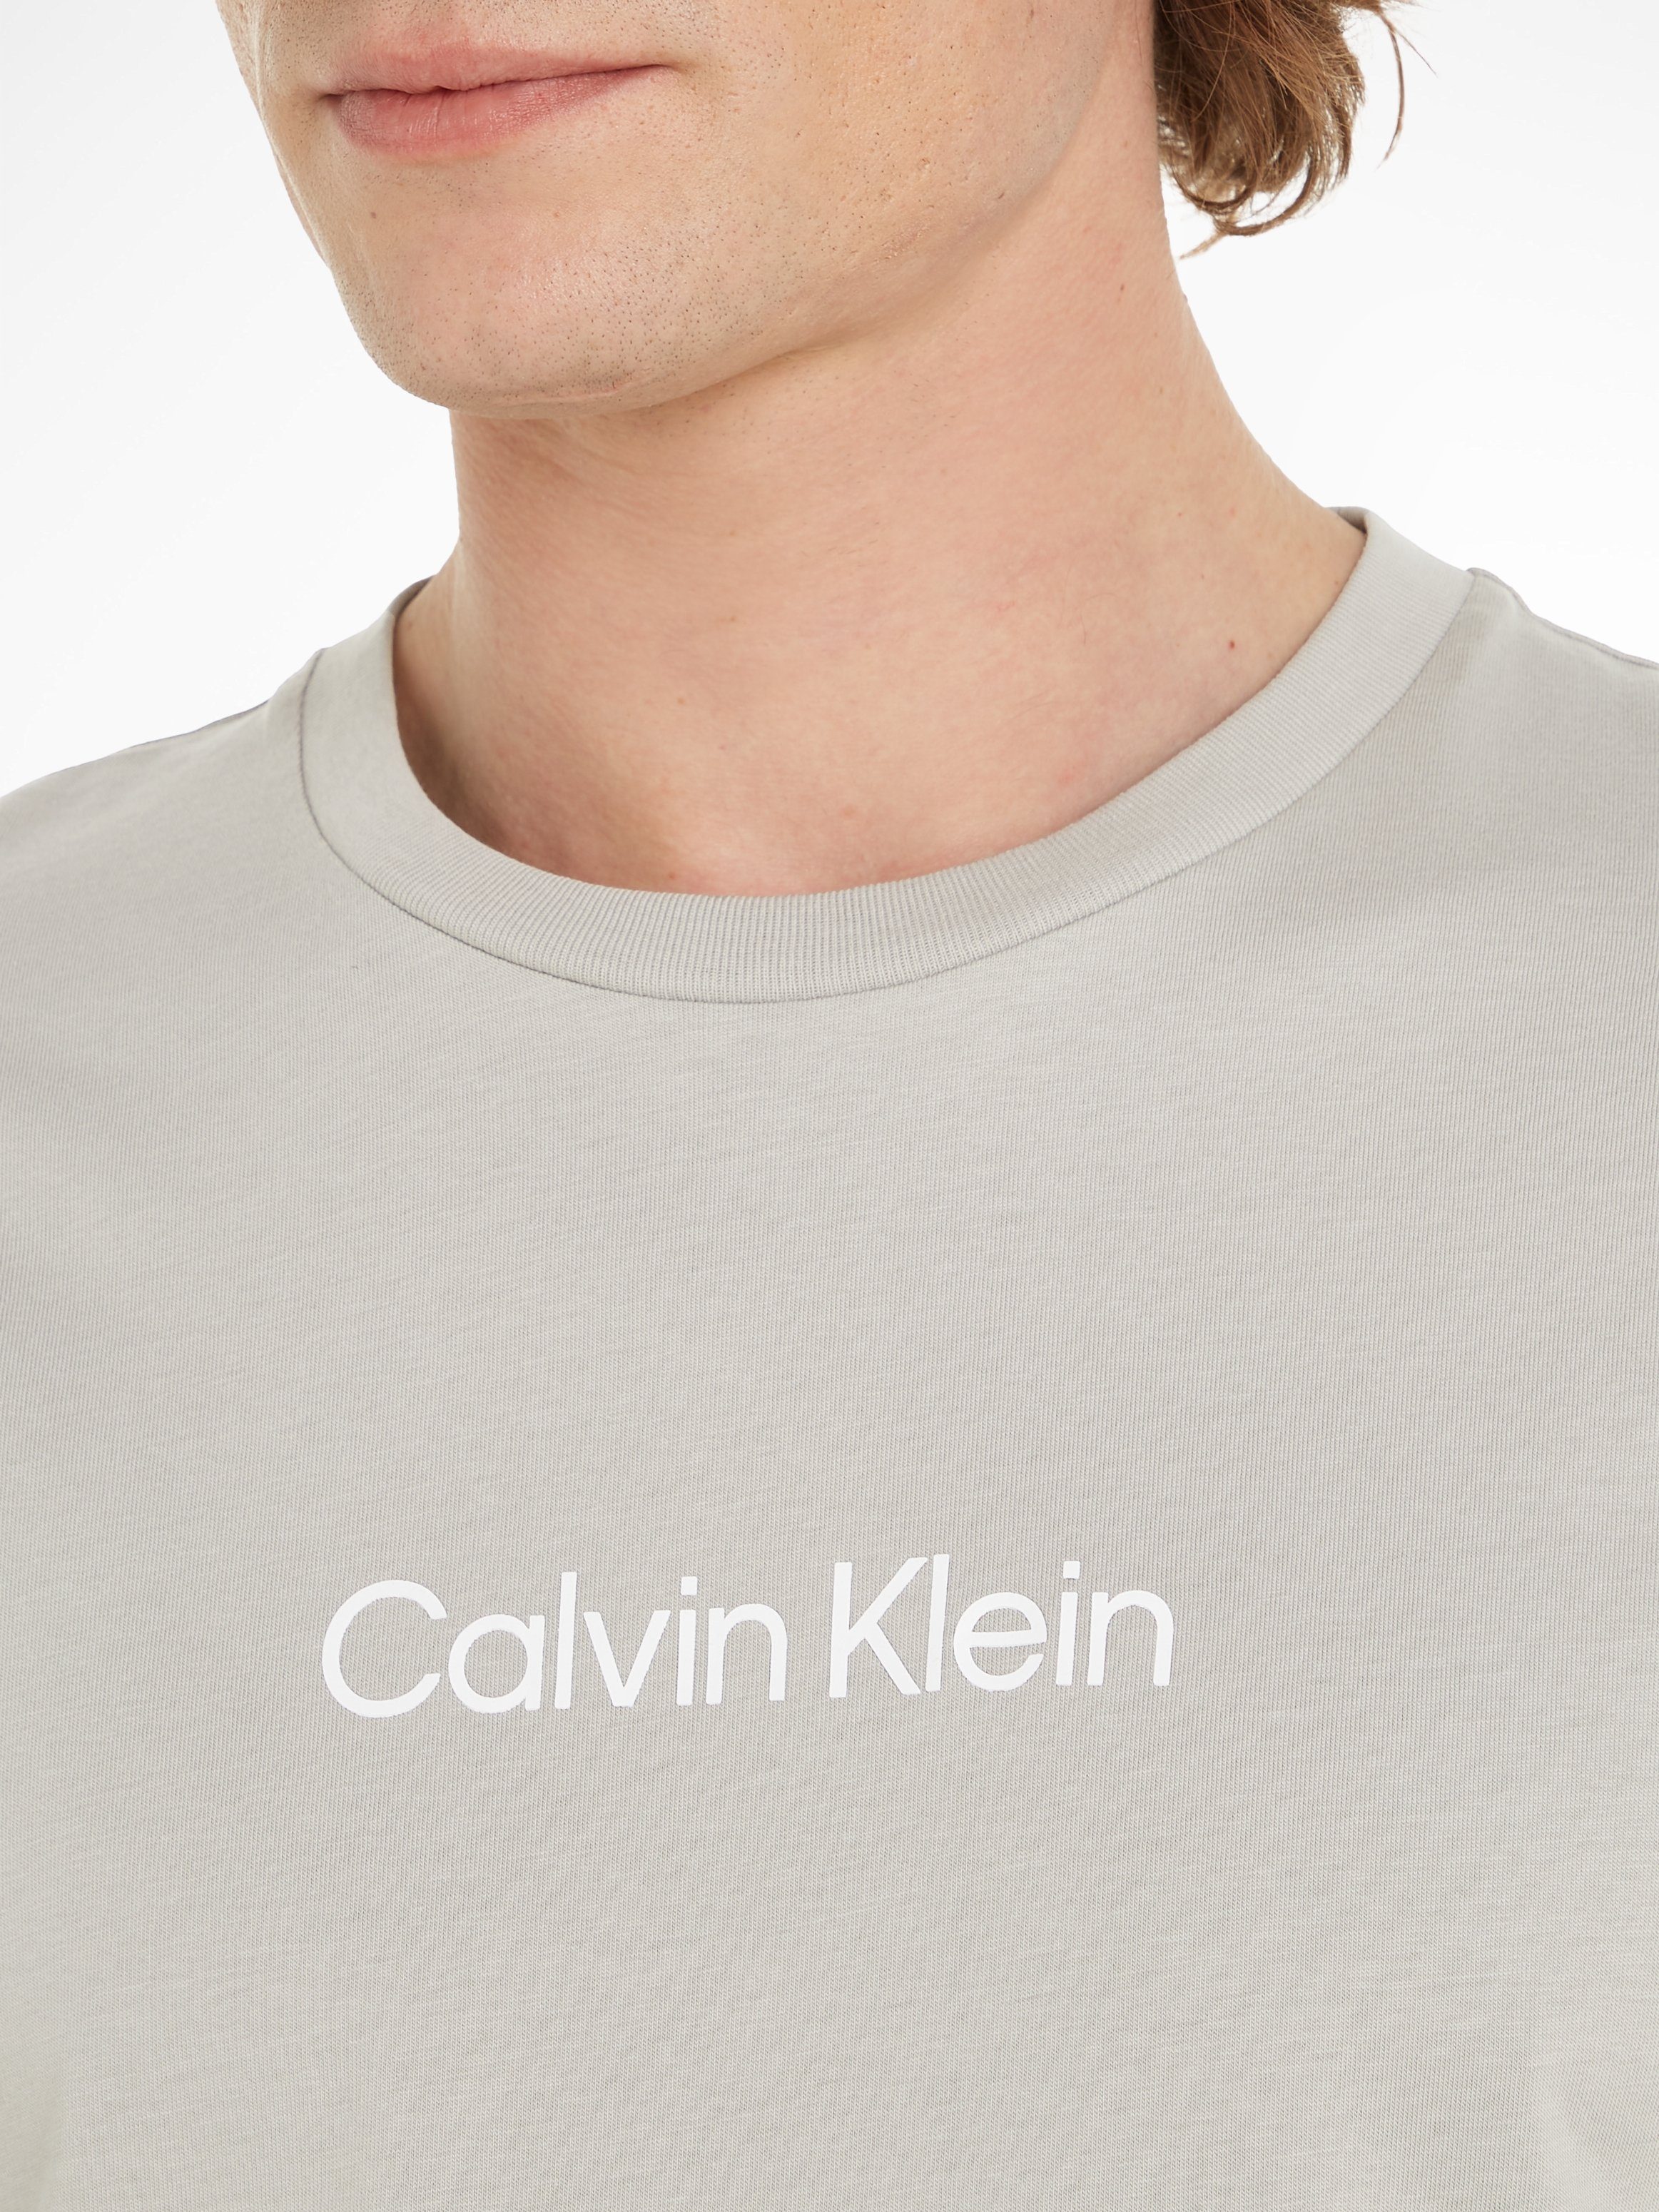 Calvin Klein T-Shirt Markenlabel HERO Ghost COMFORT mit LOGO Gray aufgedrucktem T-SHIRT